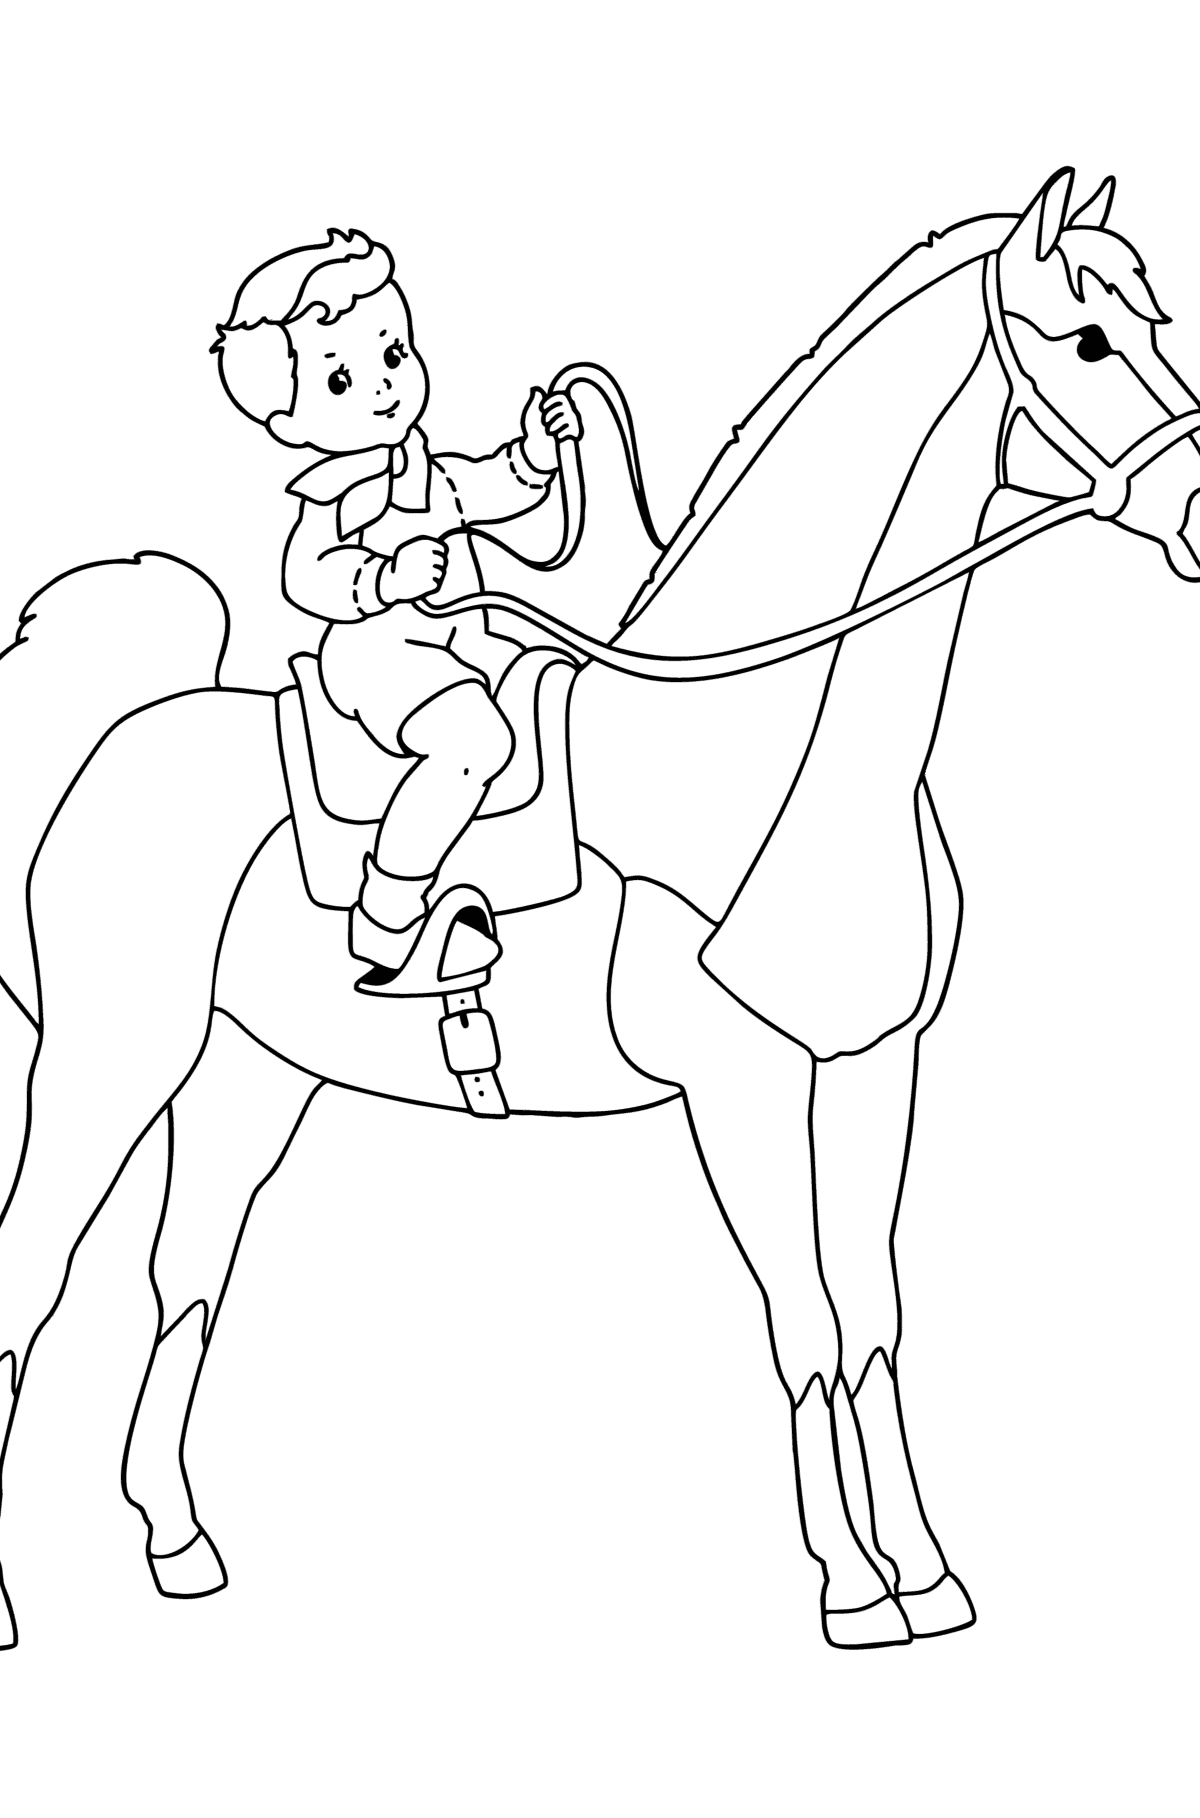 Kleurplaat Jongen te paard - kleurplaten voor kinderen